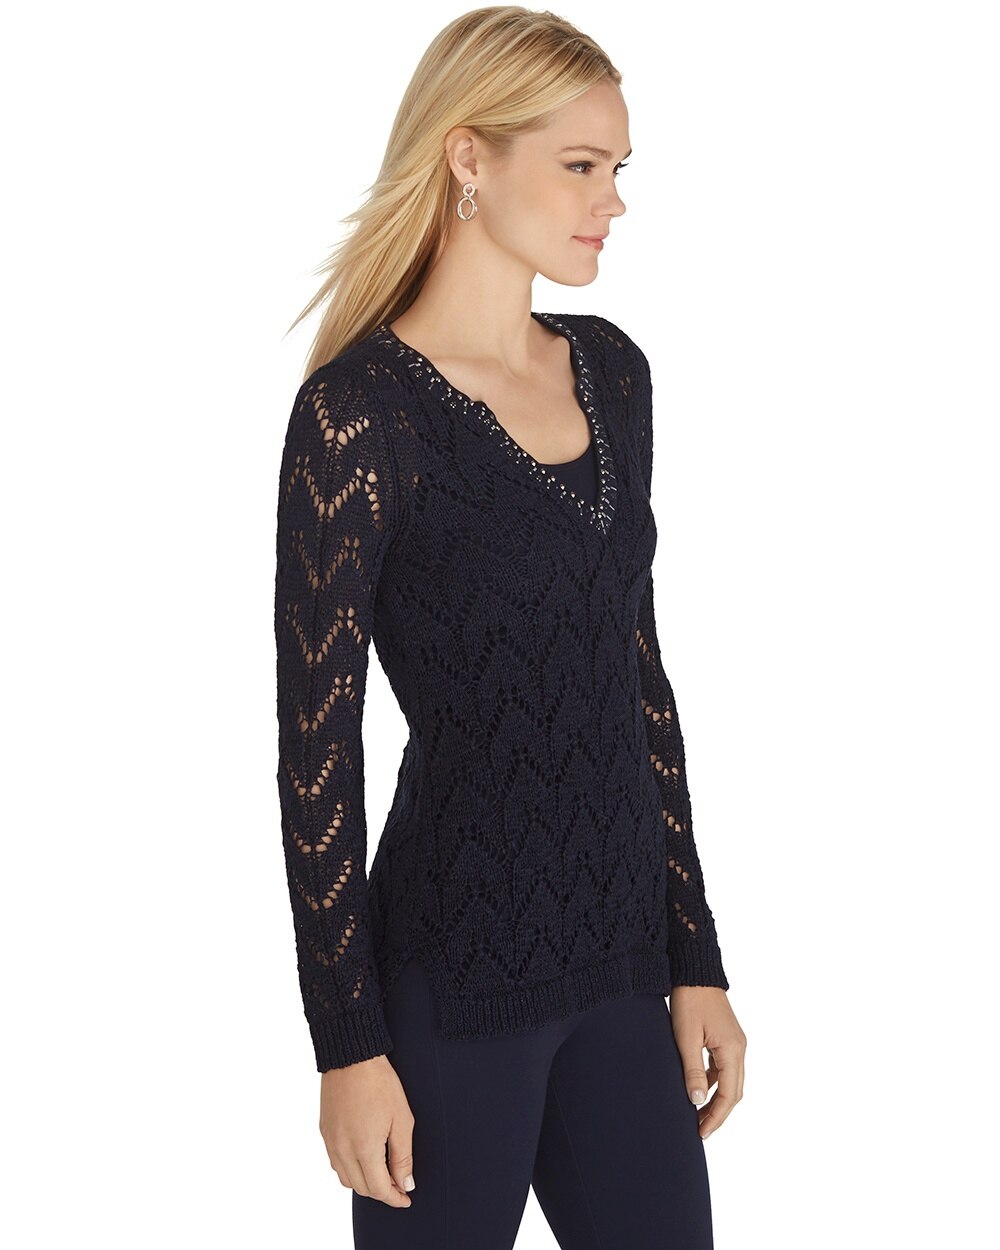 Long Sleeve Navy Embellished Sweater - White House Black Market